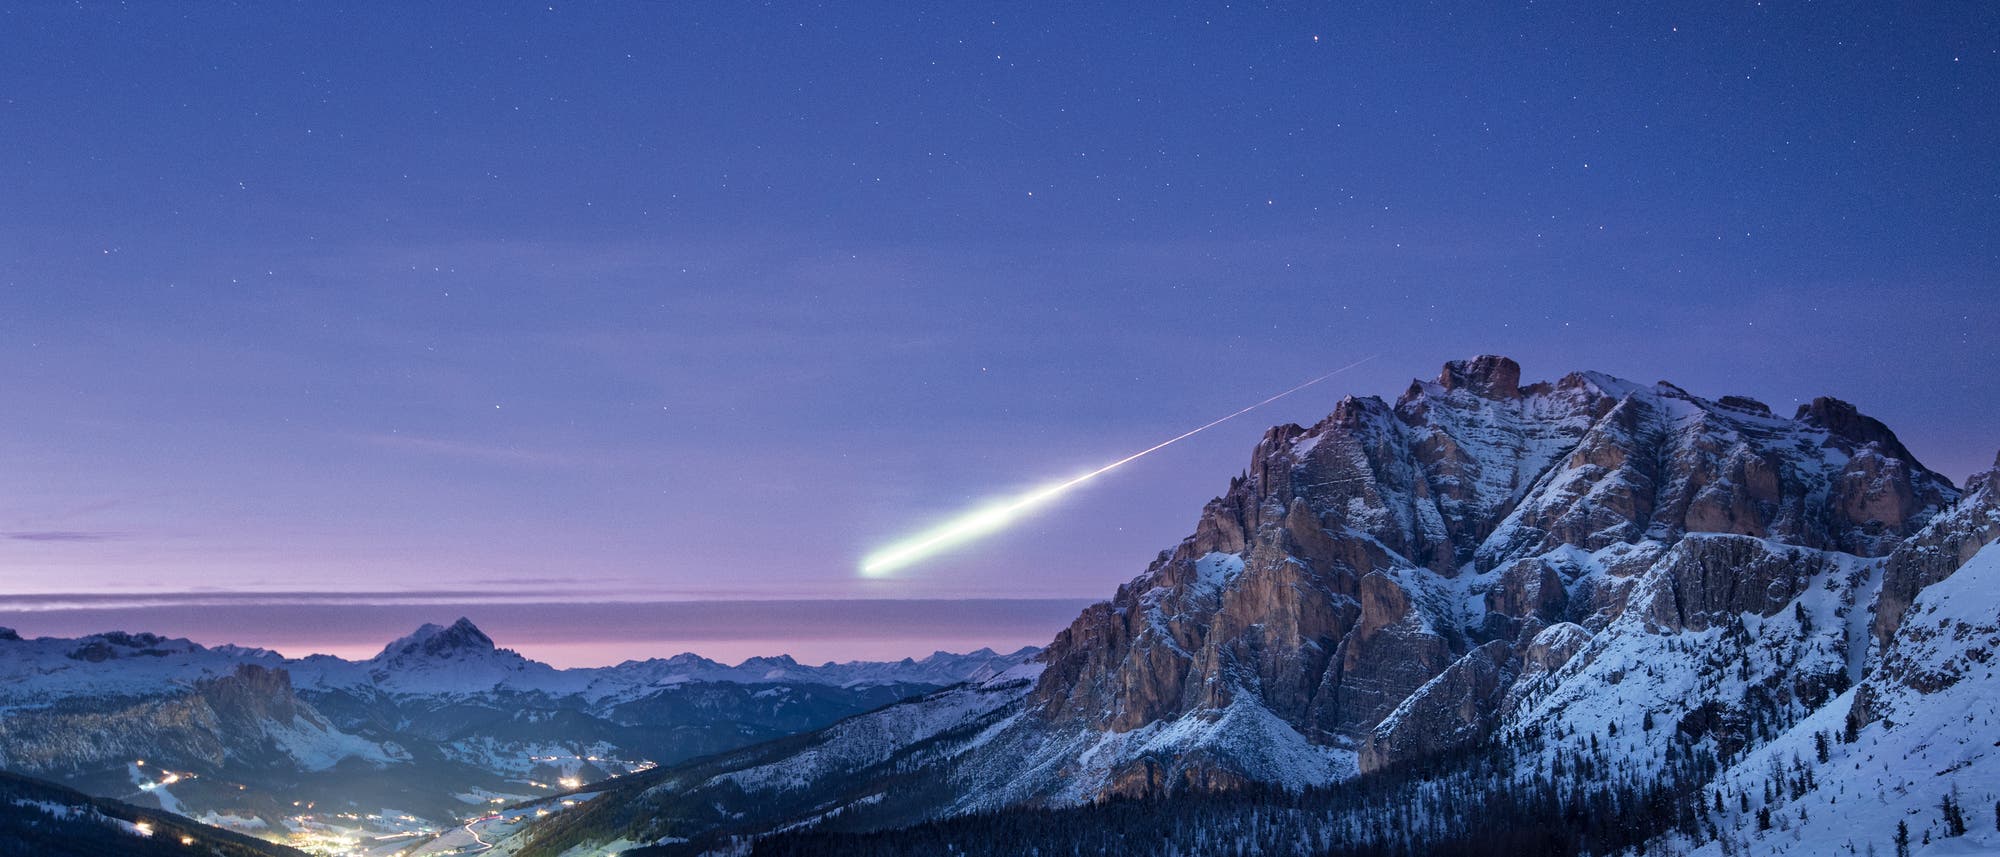 Eigentlich wollte der engli­sche Fotograf Ollie Taylor am 14. November 2017 die Abendstimmung über den Dolomiten nahe dem italienischen Ort Alta Badia im Bild festhalten. Plötzlich leuchtete eine Feuerkugel über dem nördlichen Horizont auf. Dieses Phänomen erregte euro­paweit Aufsehen und stellte Laien wie Fachleute zunächst vor Rätsel.